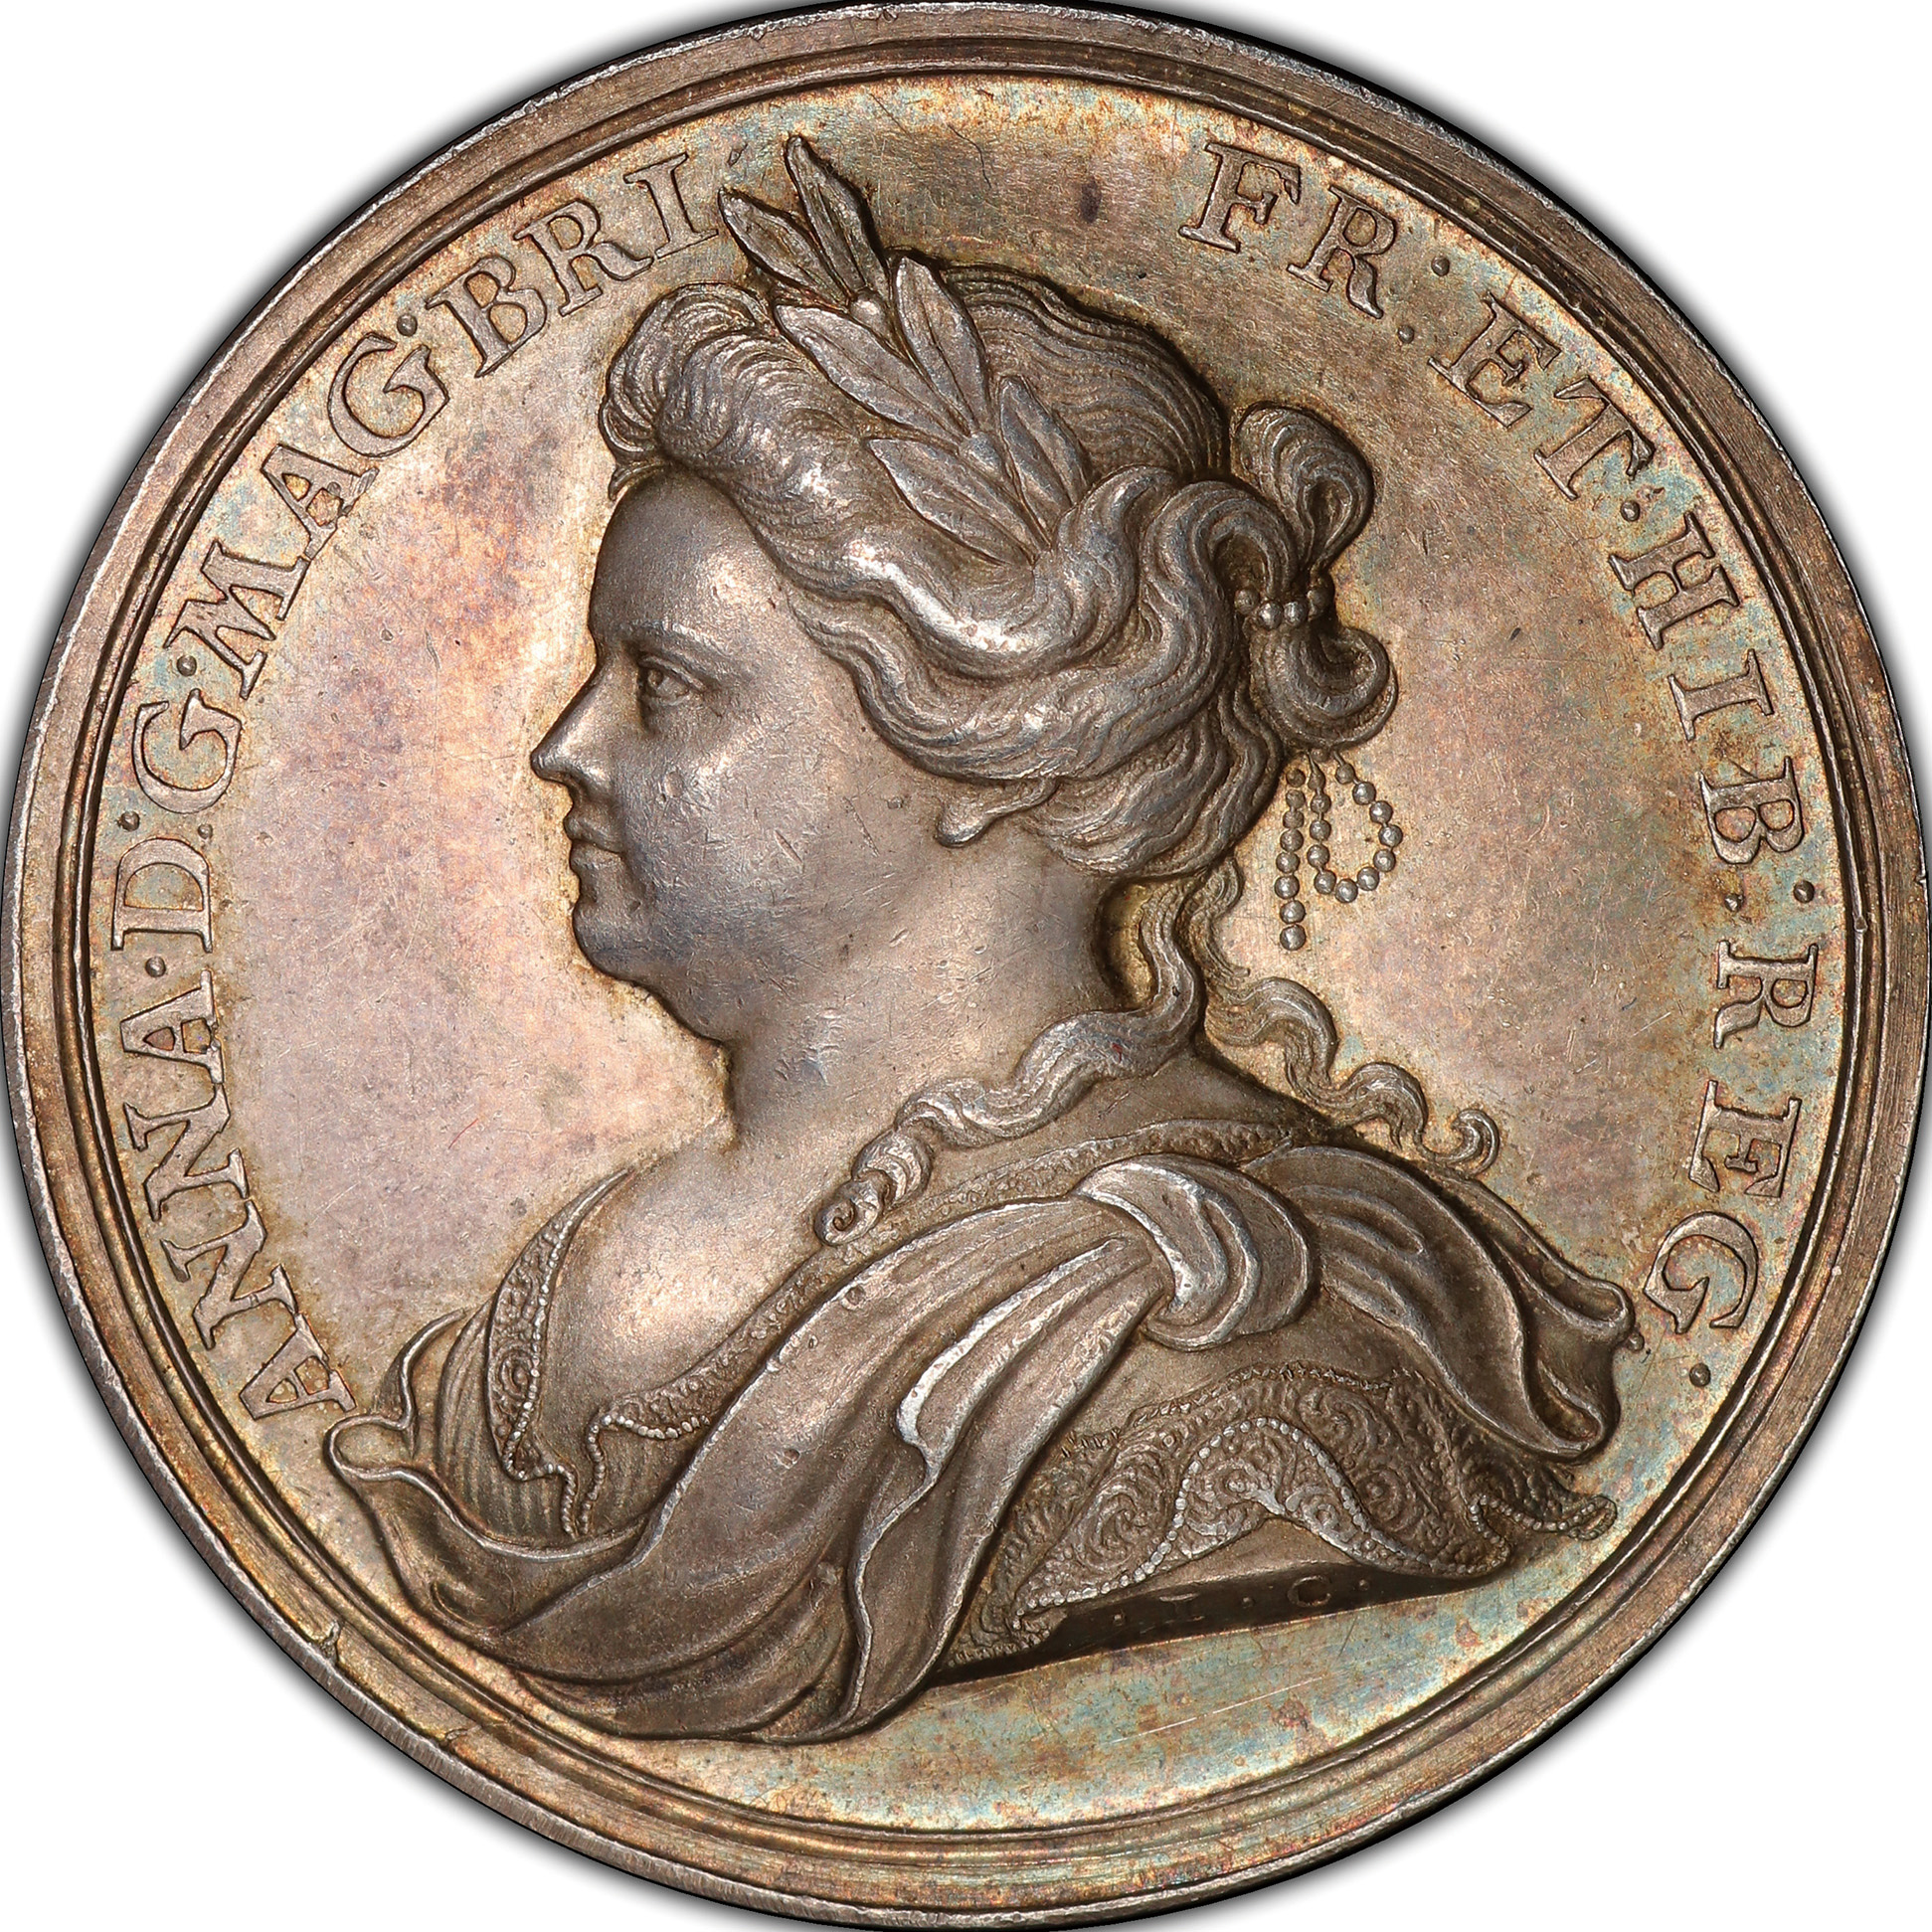 英国 (Great Britain) アン女王像 ユトレヒト条約 銀メダル 1713年 